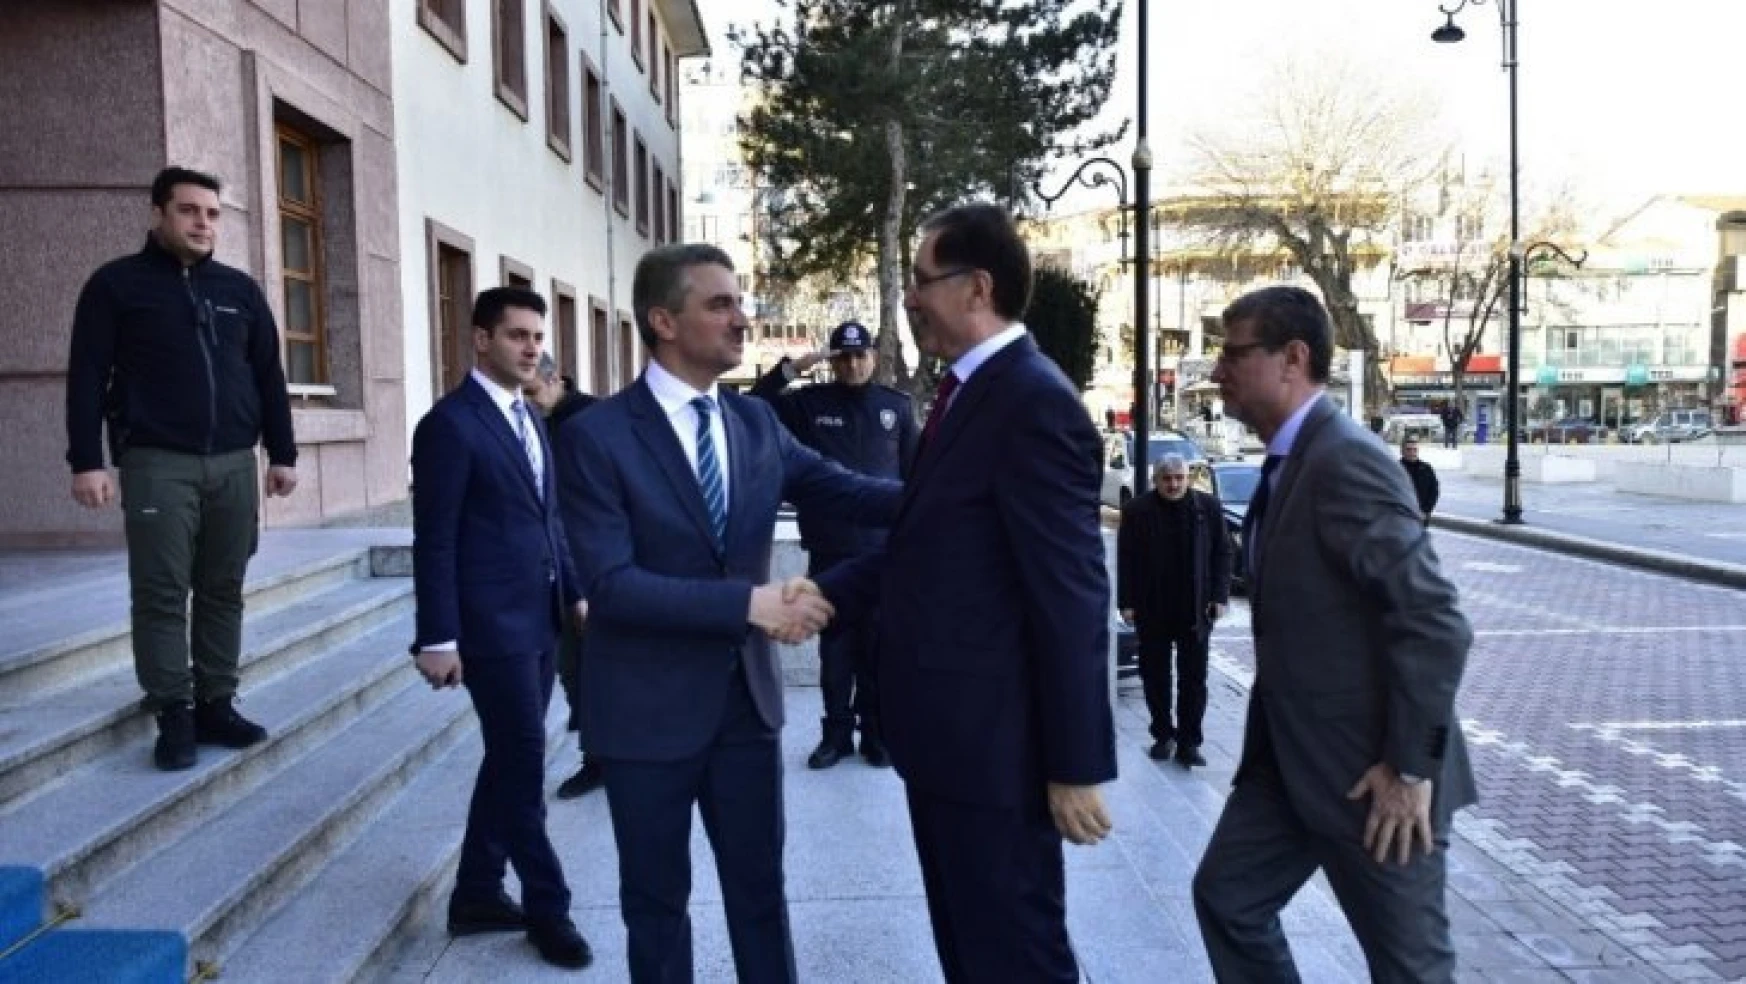 Kamu Başdenetçisi Malkoç, Vali Baruş'u ziyaret etti